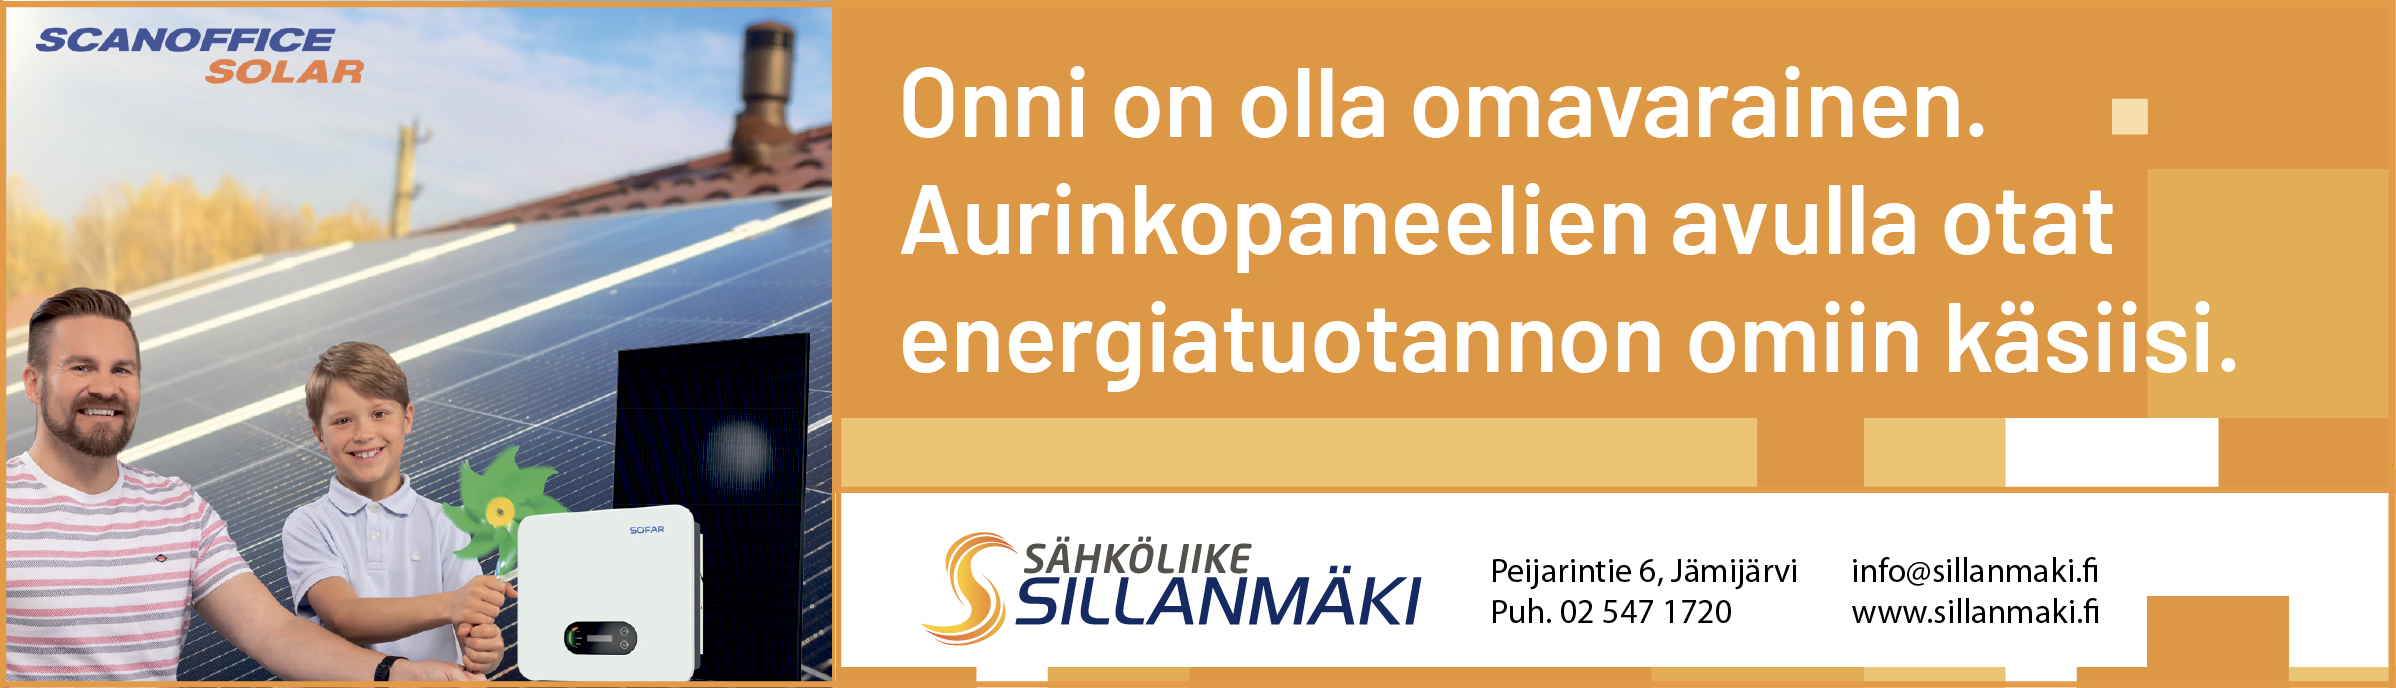 Paraatibanneri Sähköliike Sillanmäki 29.5.–5.6.